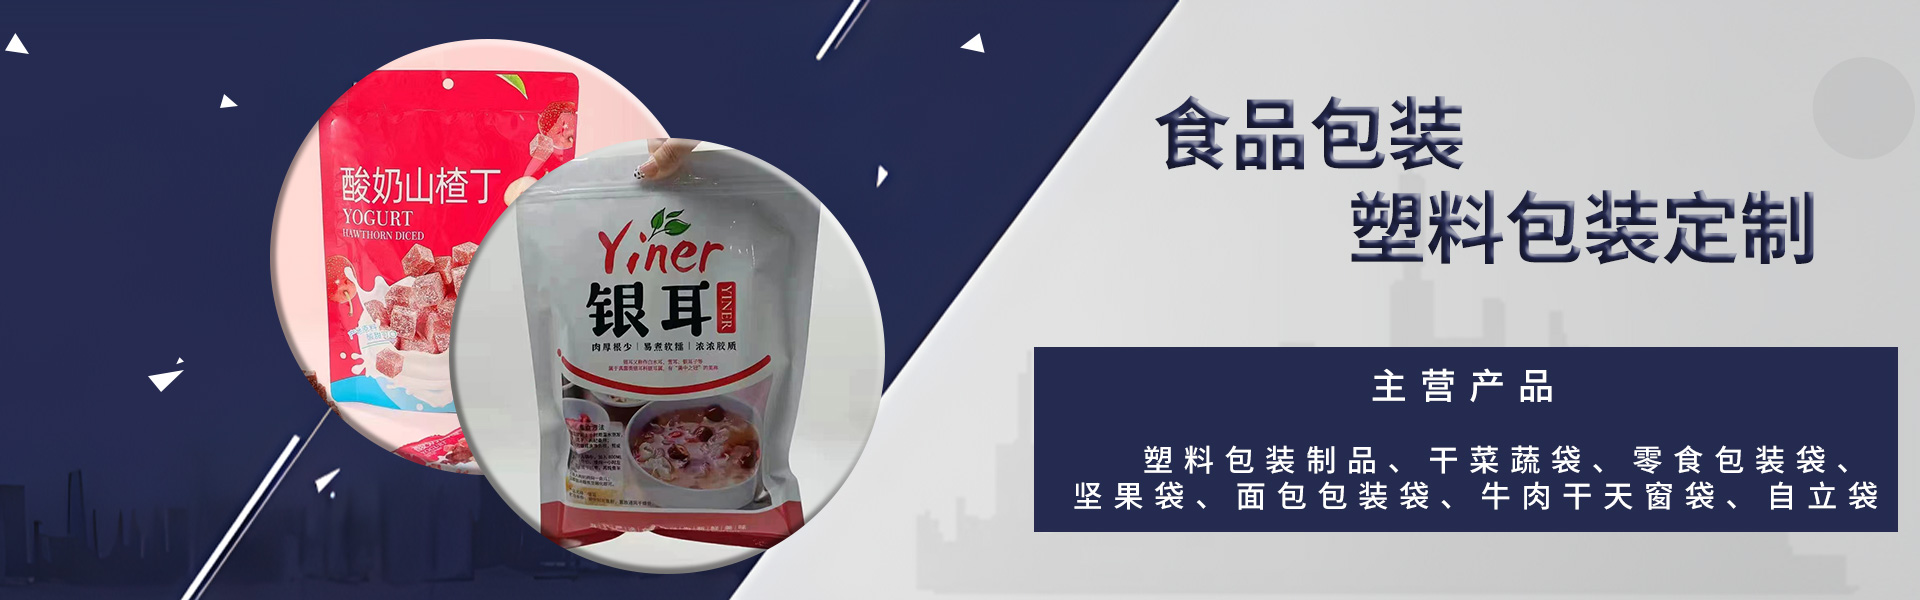 华腾海瑞(天津)塑料包装制品有限公司